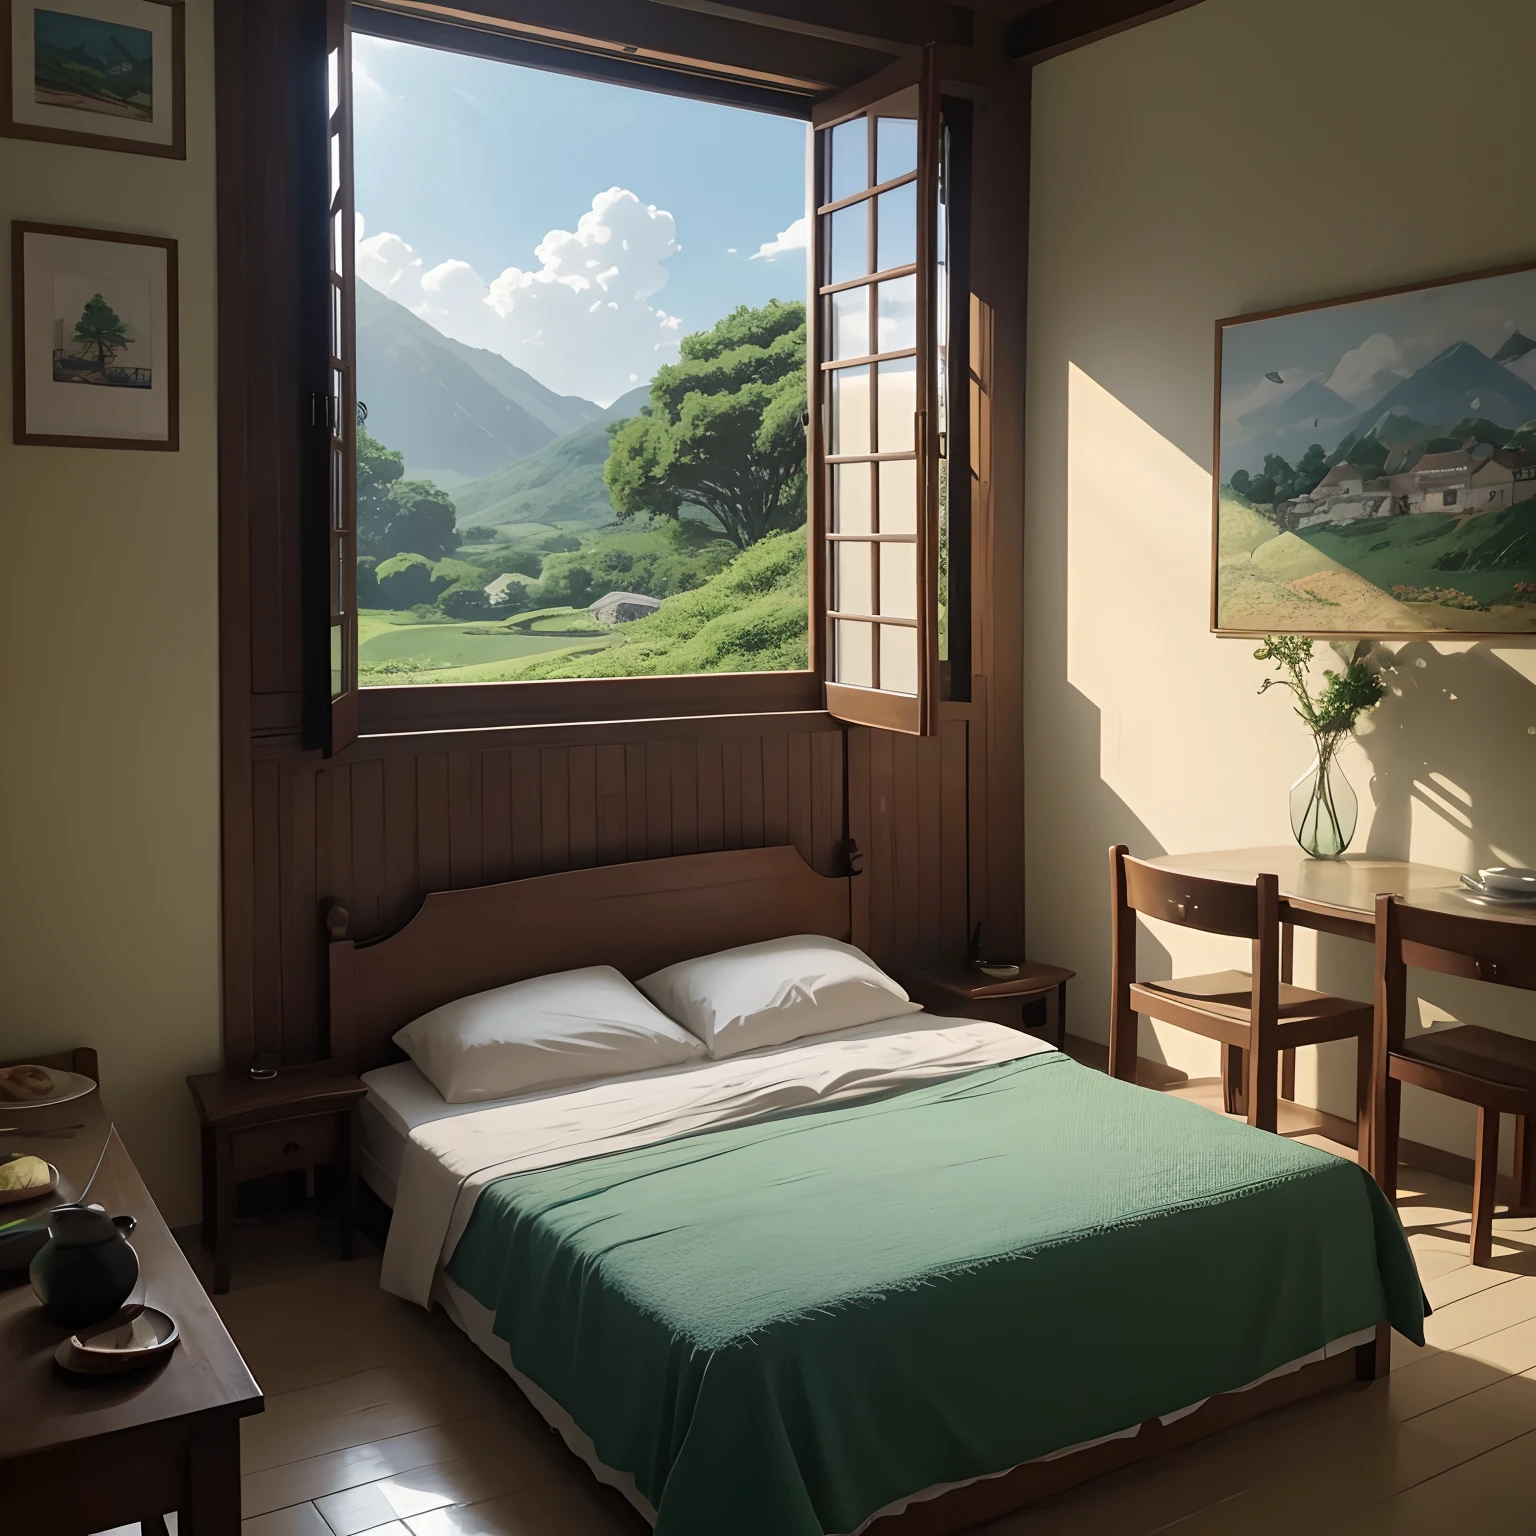 Es gibt ein Gemälde von einem Zimmer mit einem Bett und einem Fenster, ein sonniges Zimmer, Zimmer im Studio Ghibli, Studio Ghibli Sonnenschein, detailliertes Zenarium, Anime-Hintergrundkunst, Anime schöne friedliche Szene, Anime-Landschaft, Raumhintergrund , schöne Animeszene, ib-Hintergrundfenster öffnen, schöne Animeszene